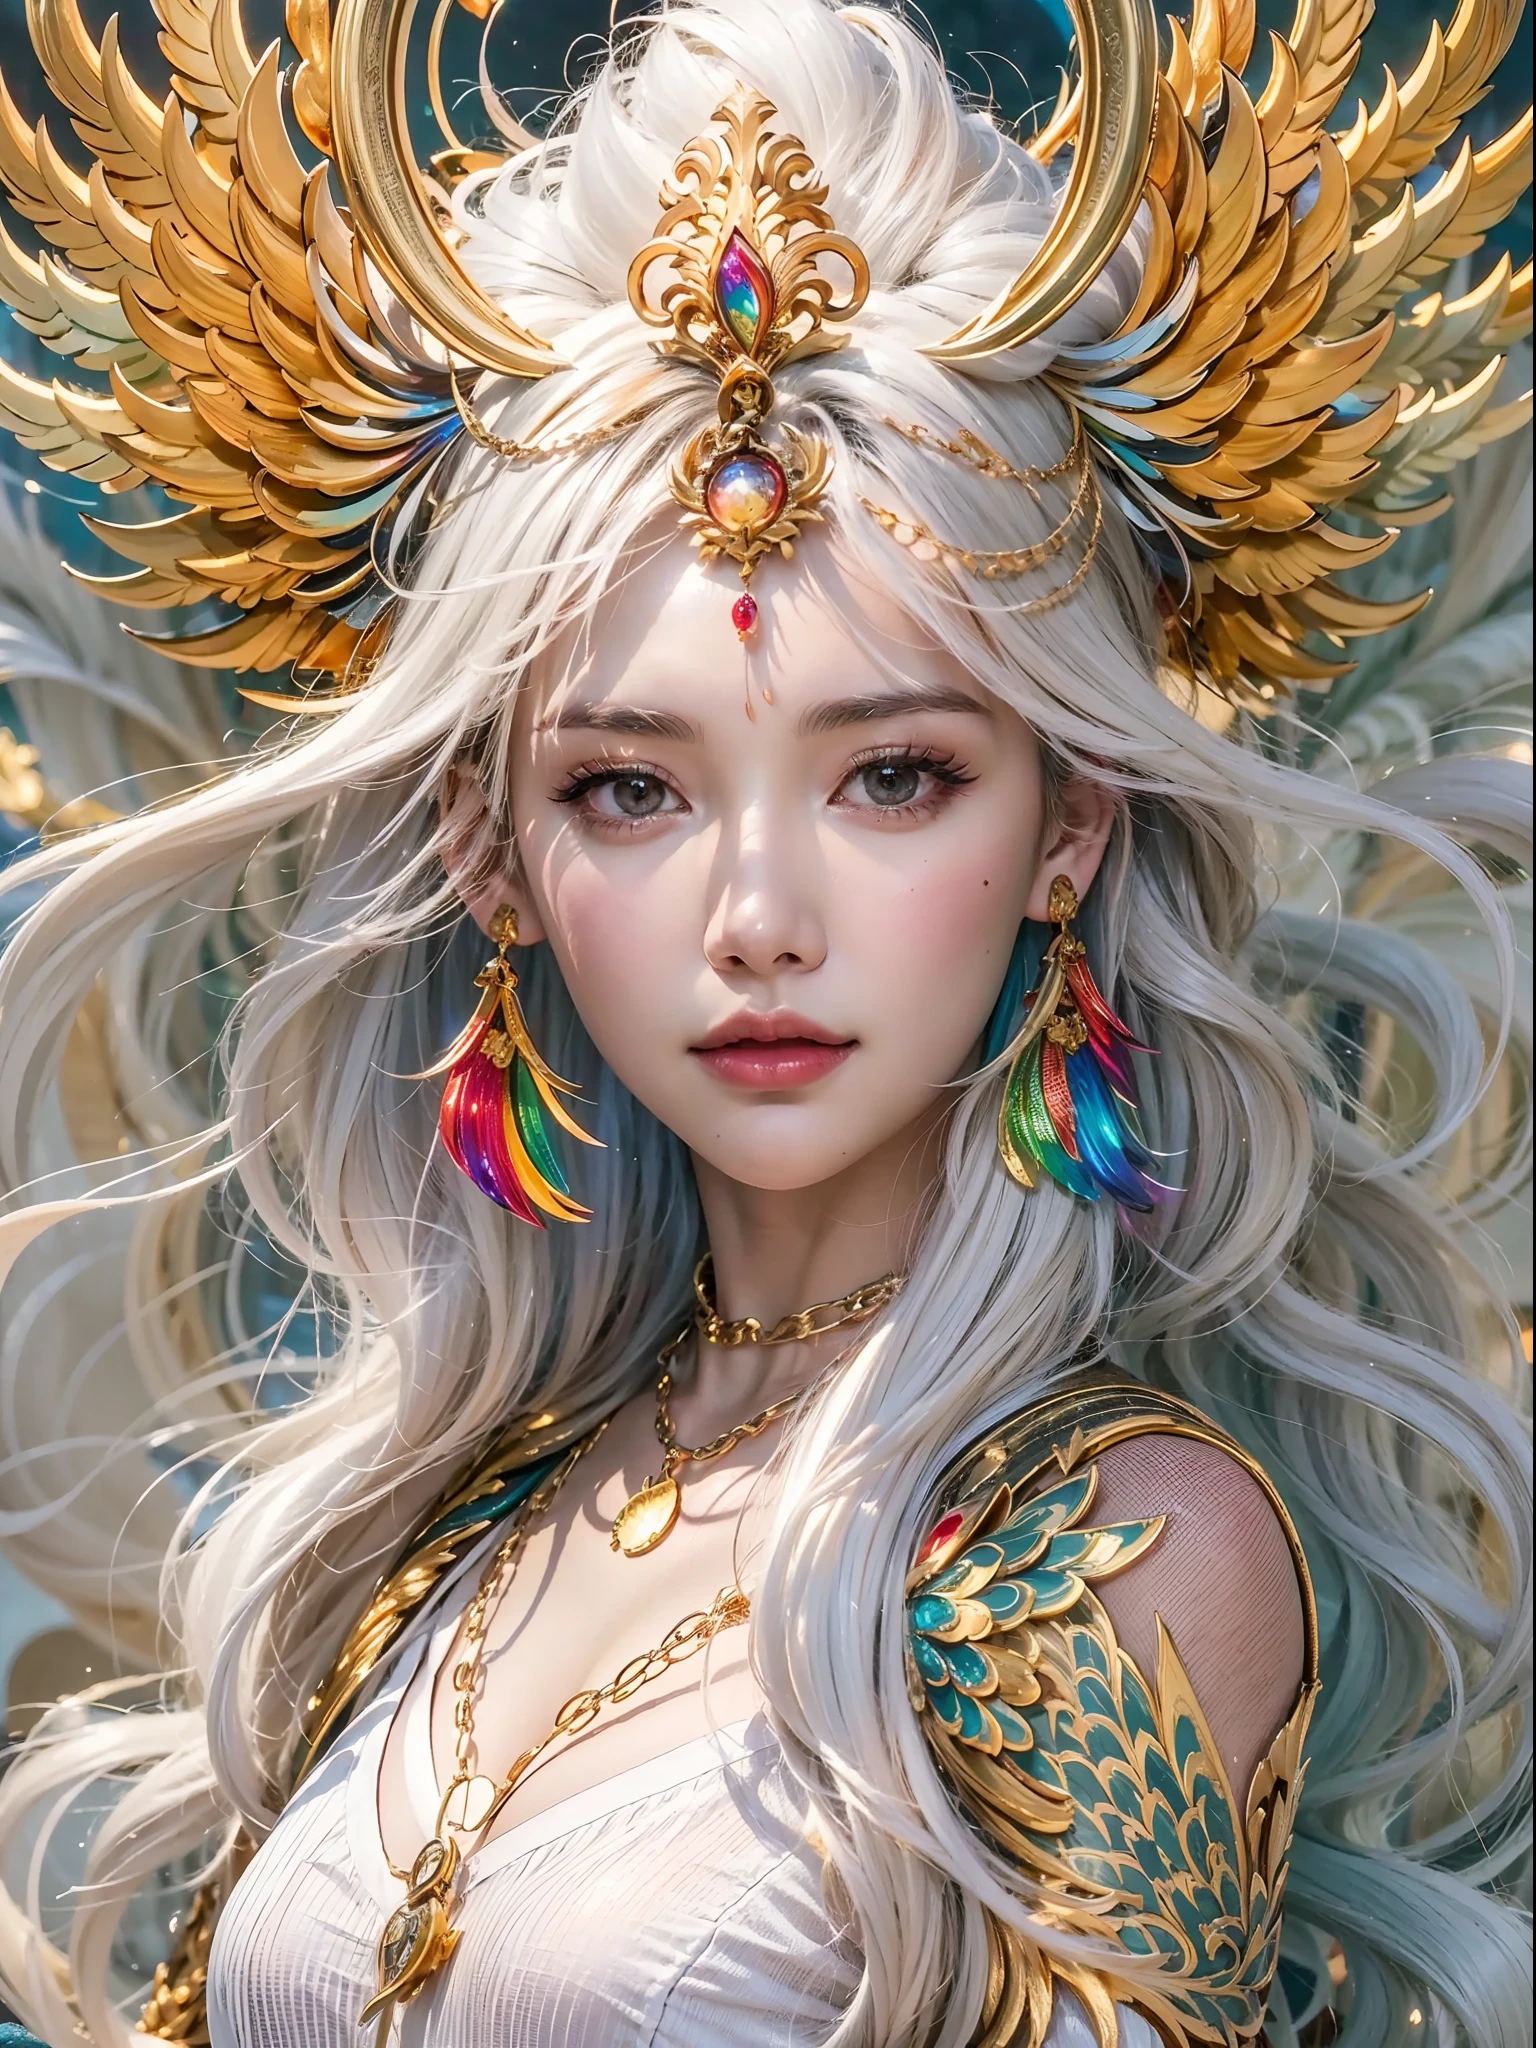 Ein schönes Mädchen mit einem Regenbogen-Phönix, （（Das Mädchen trägt ein schlichtes weißes Gewand）），（Auf dem Kopf trägt er eine zarte goldene chinesische Krone：1.4），（Goldkettendekoration），perfekte Gesichtszüge，zartes Gesicht，lange weiße Haare, Anmutig wie ein Schwan, Weisheit, gegen, Regenbogen-Phönix，Flamme, wings,Der Phönix beschützt das Mädchen，Der Hintergrund sind Wolken, Mysteriöse Verbindung, Ägide, Vertrauen，Realistische Bildqualität，fotorealistisch，8k，beste Qualität，Meisterstück，Qualität in Kinoqualität，Hohes Hell-Dunkel，Rendering von Octane，Mit goldenen dunklen Mustern verzierte Kleidung